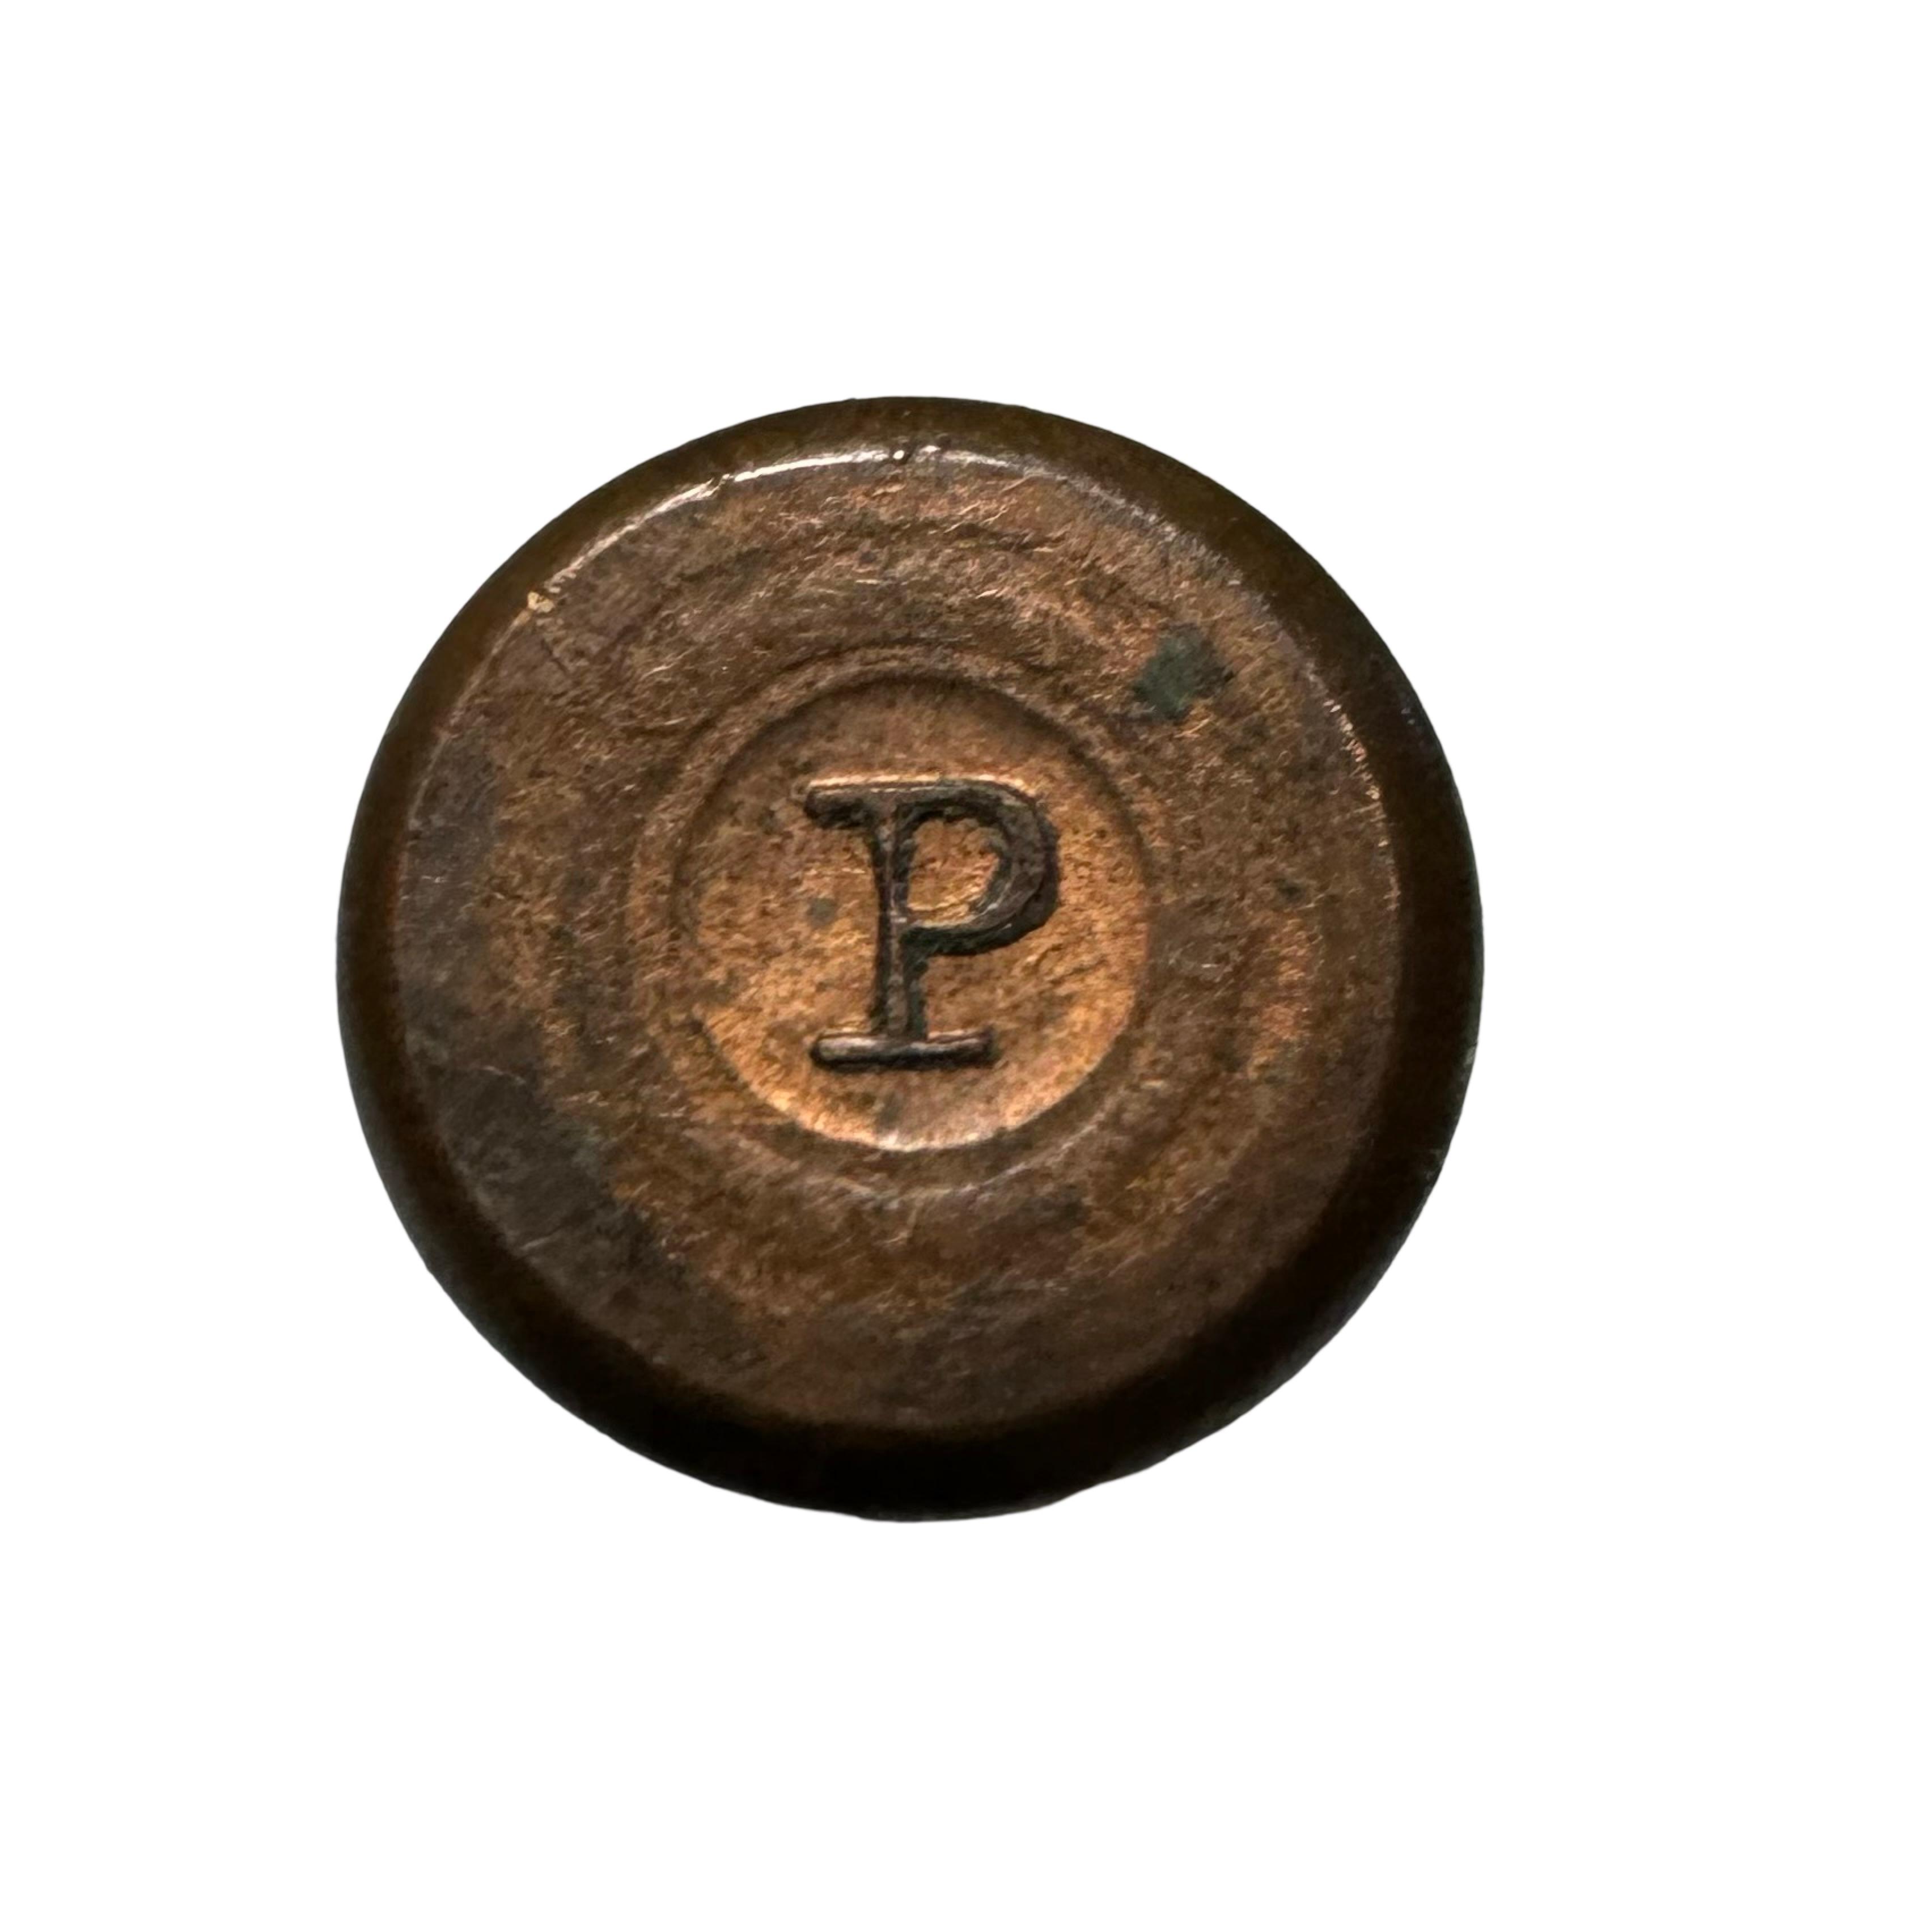 *UNIDENTIFIED* Phoenix Metallic Cartridge Co. (CT. 1872-1878 | Inside Primed?) Cartridge